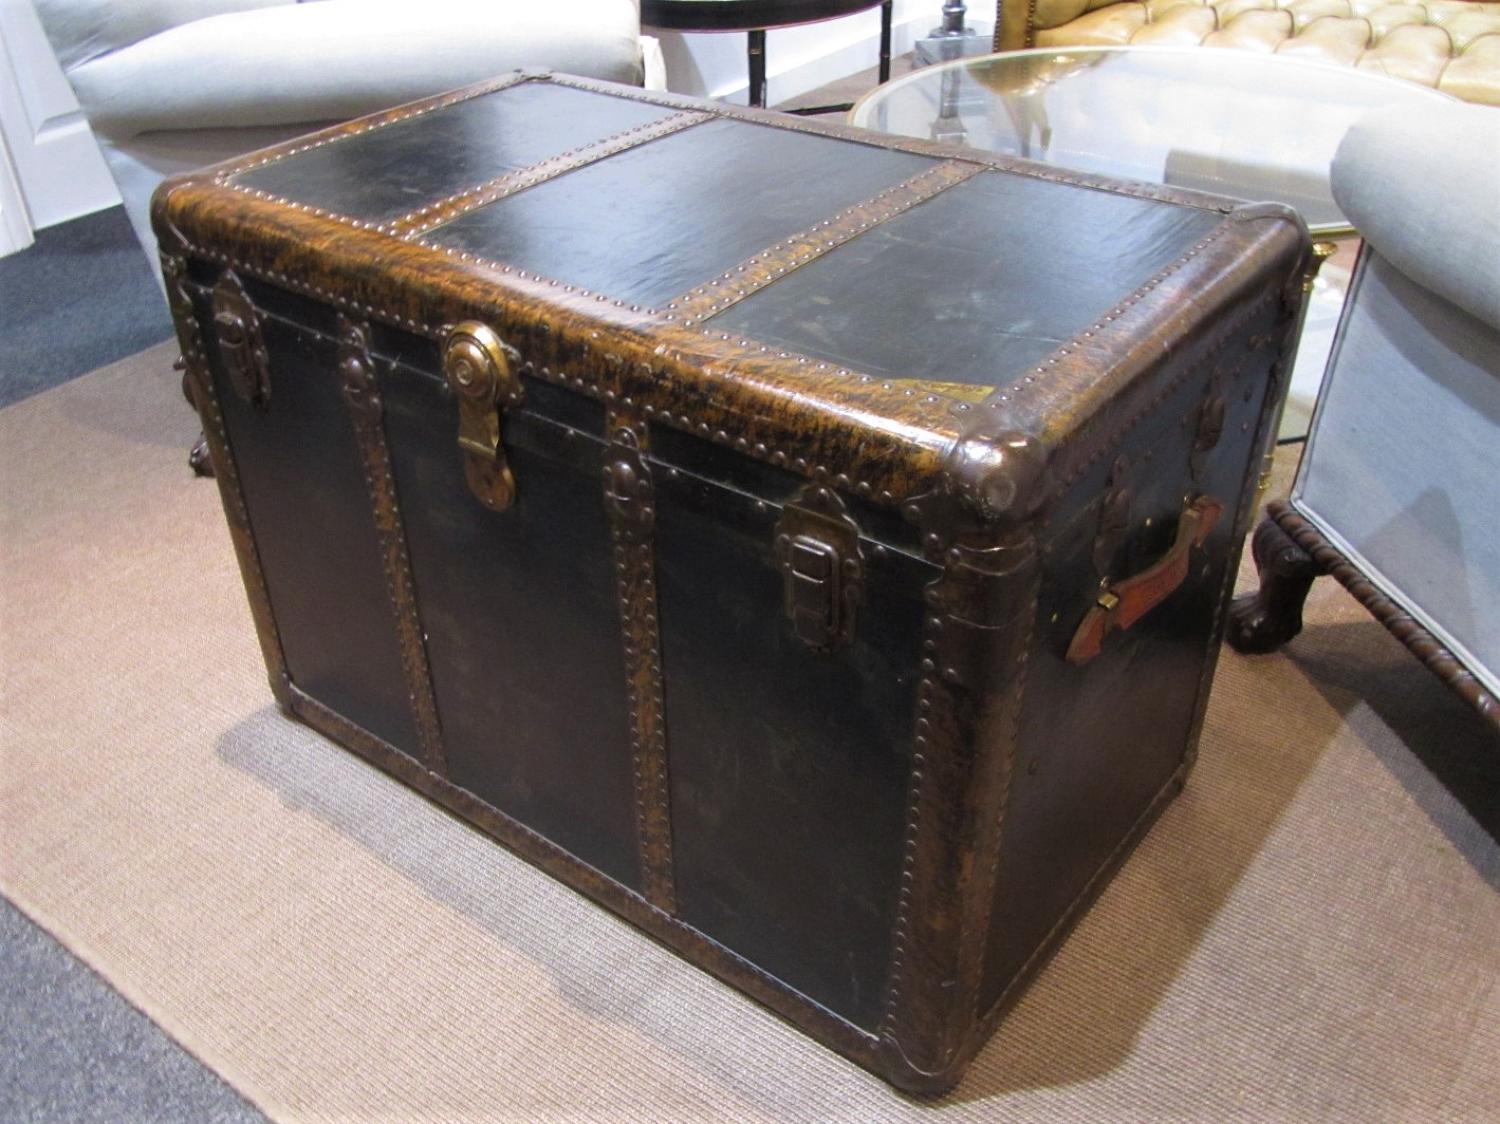 A Murphy's of st Louis steamer trunk